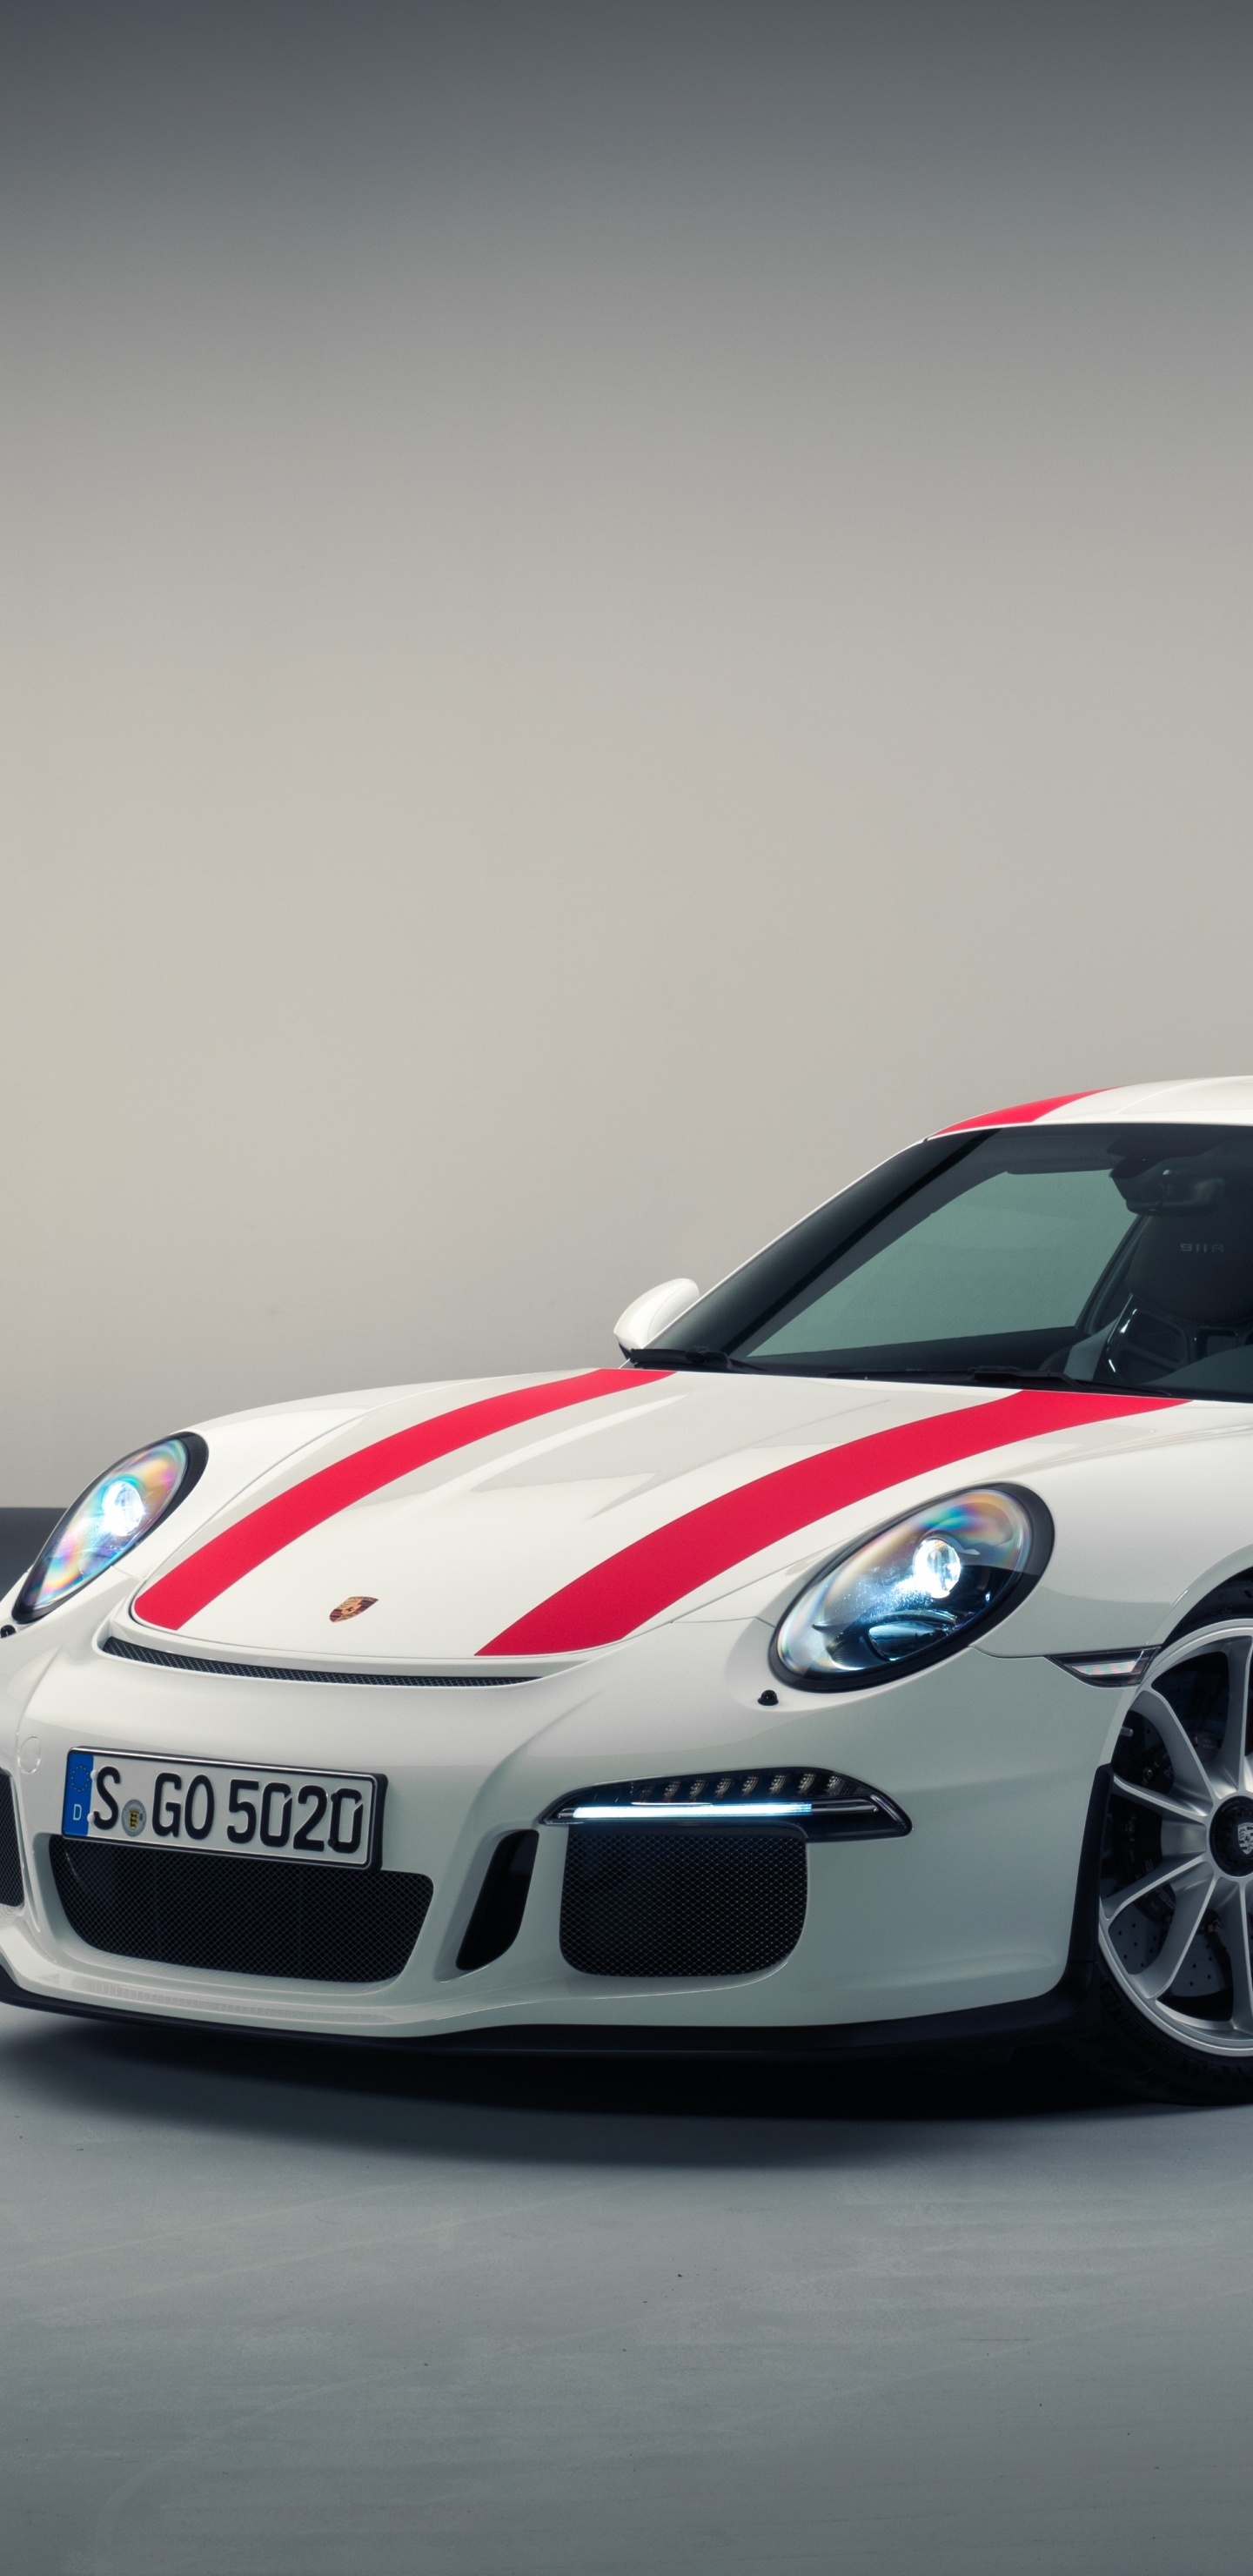 Porsche 911 Blanco y Rojo. Wallpaper in 1440x2960 Resolution